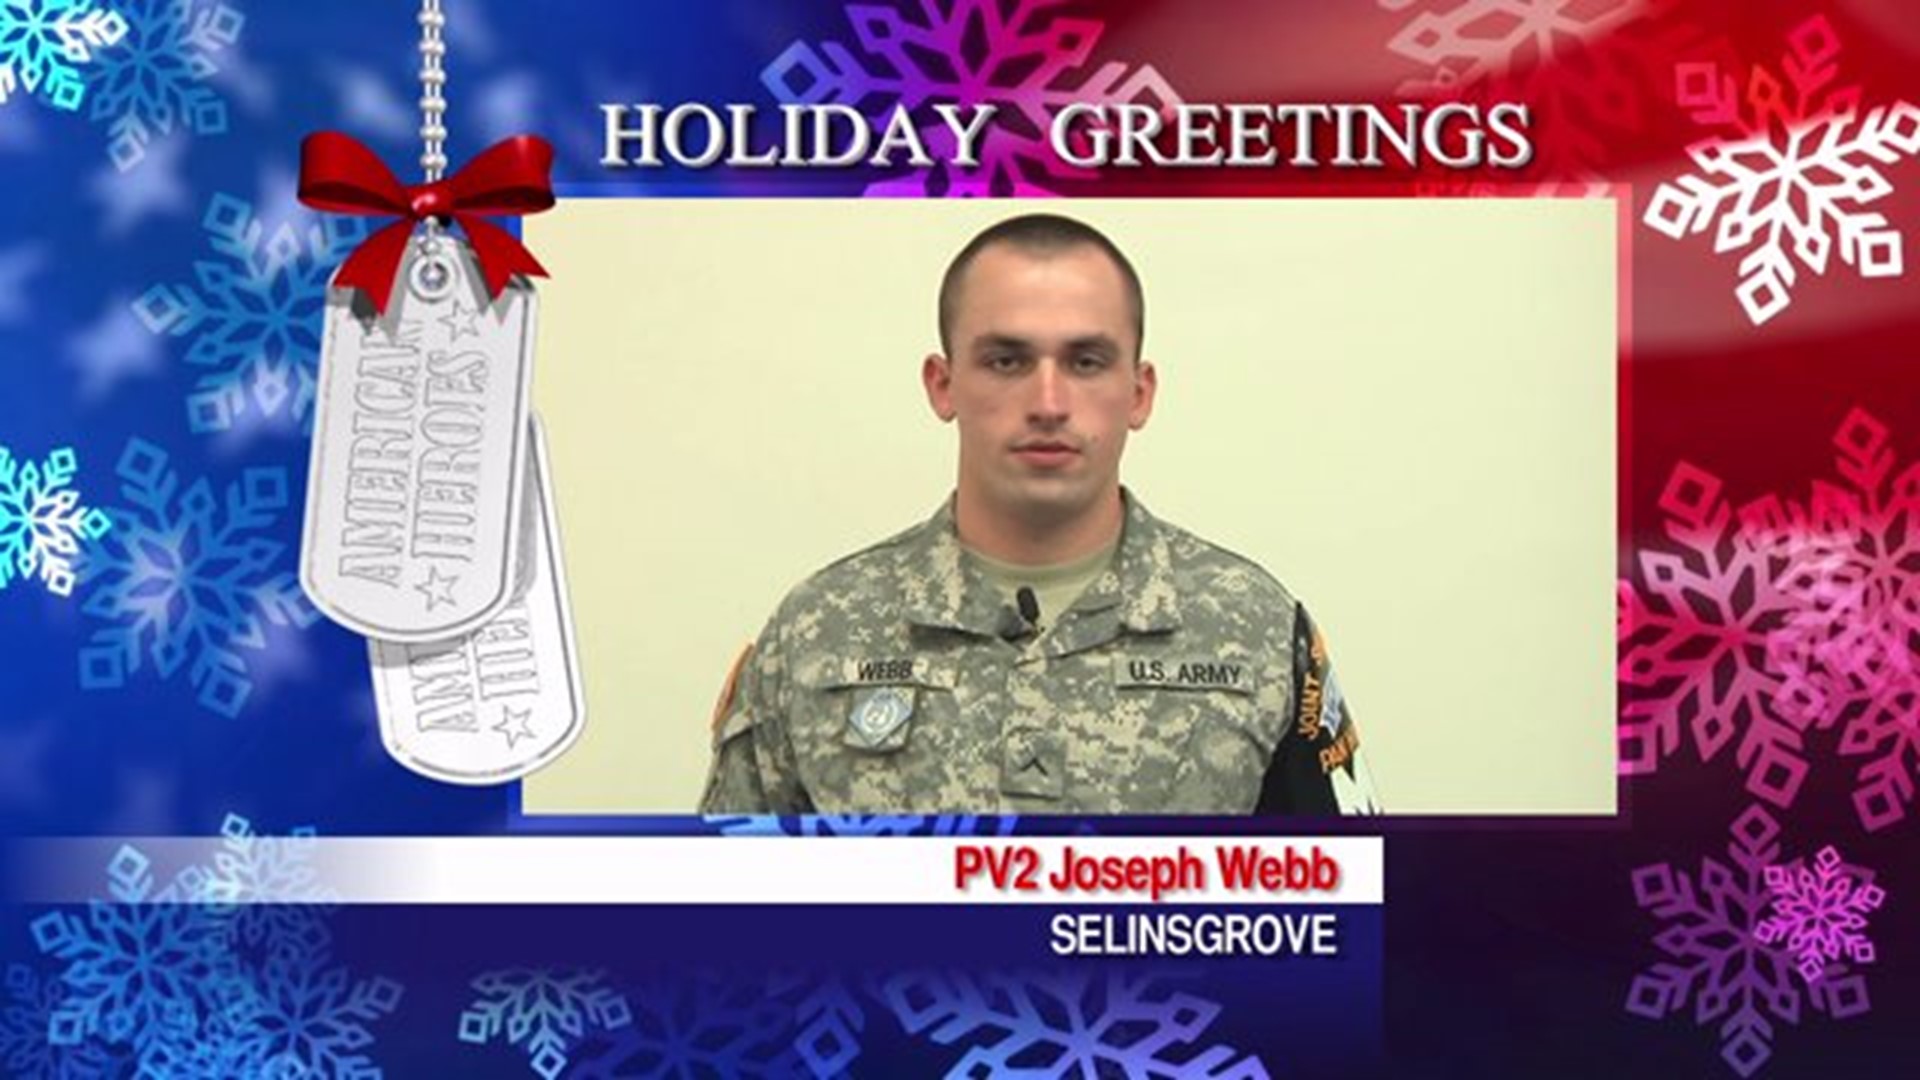 Military Greeting: PV2 Joseph Webb